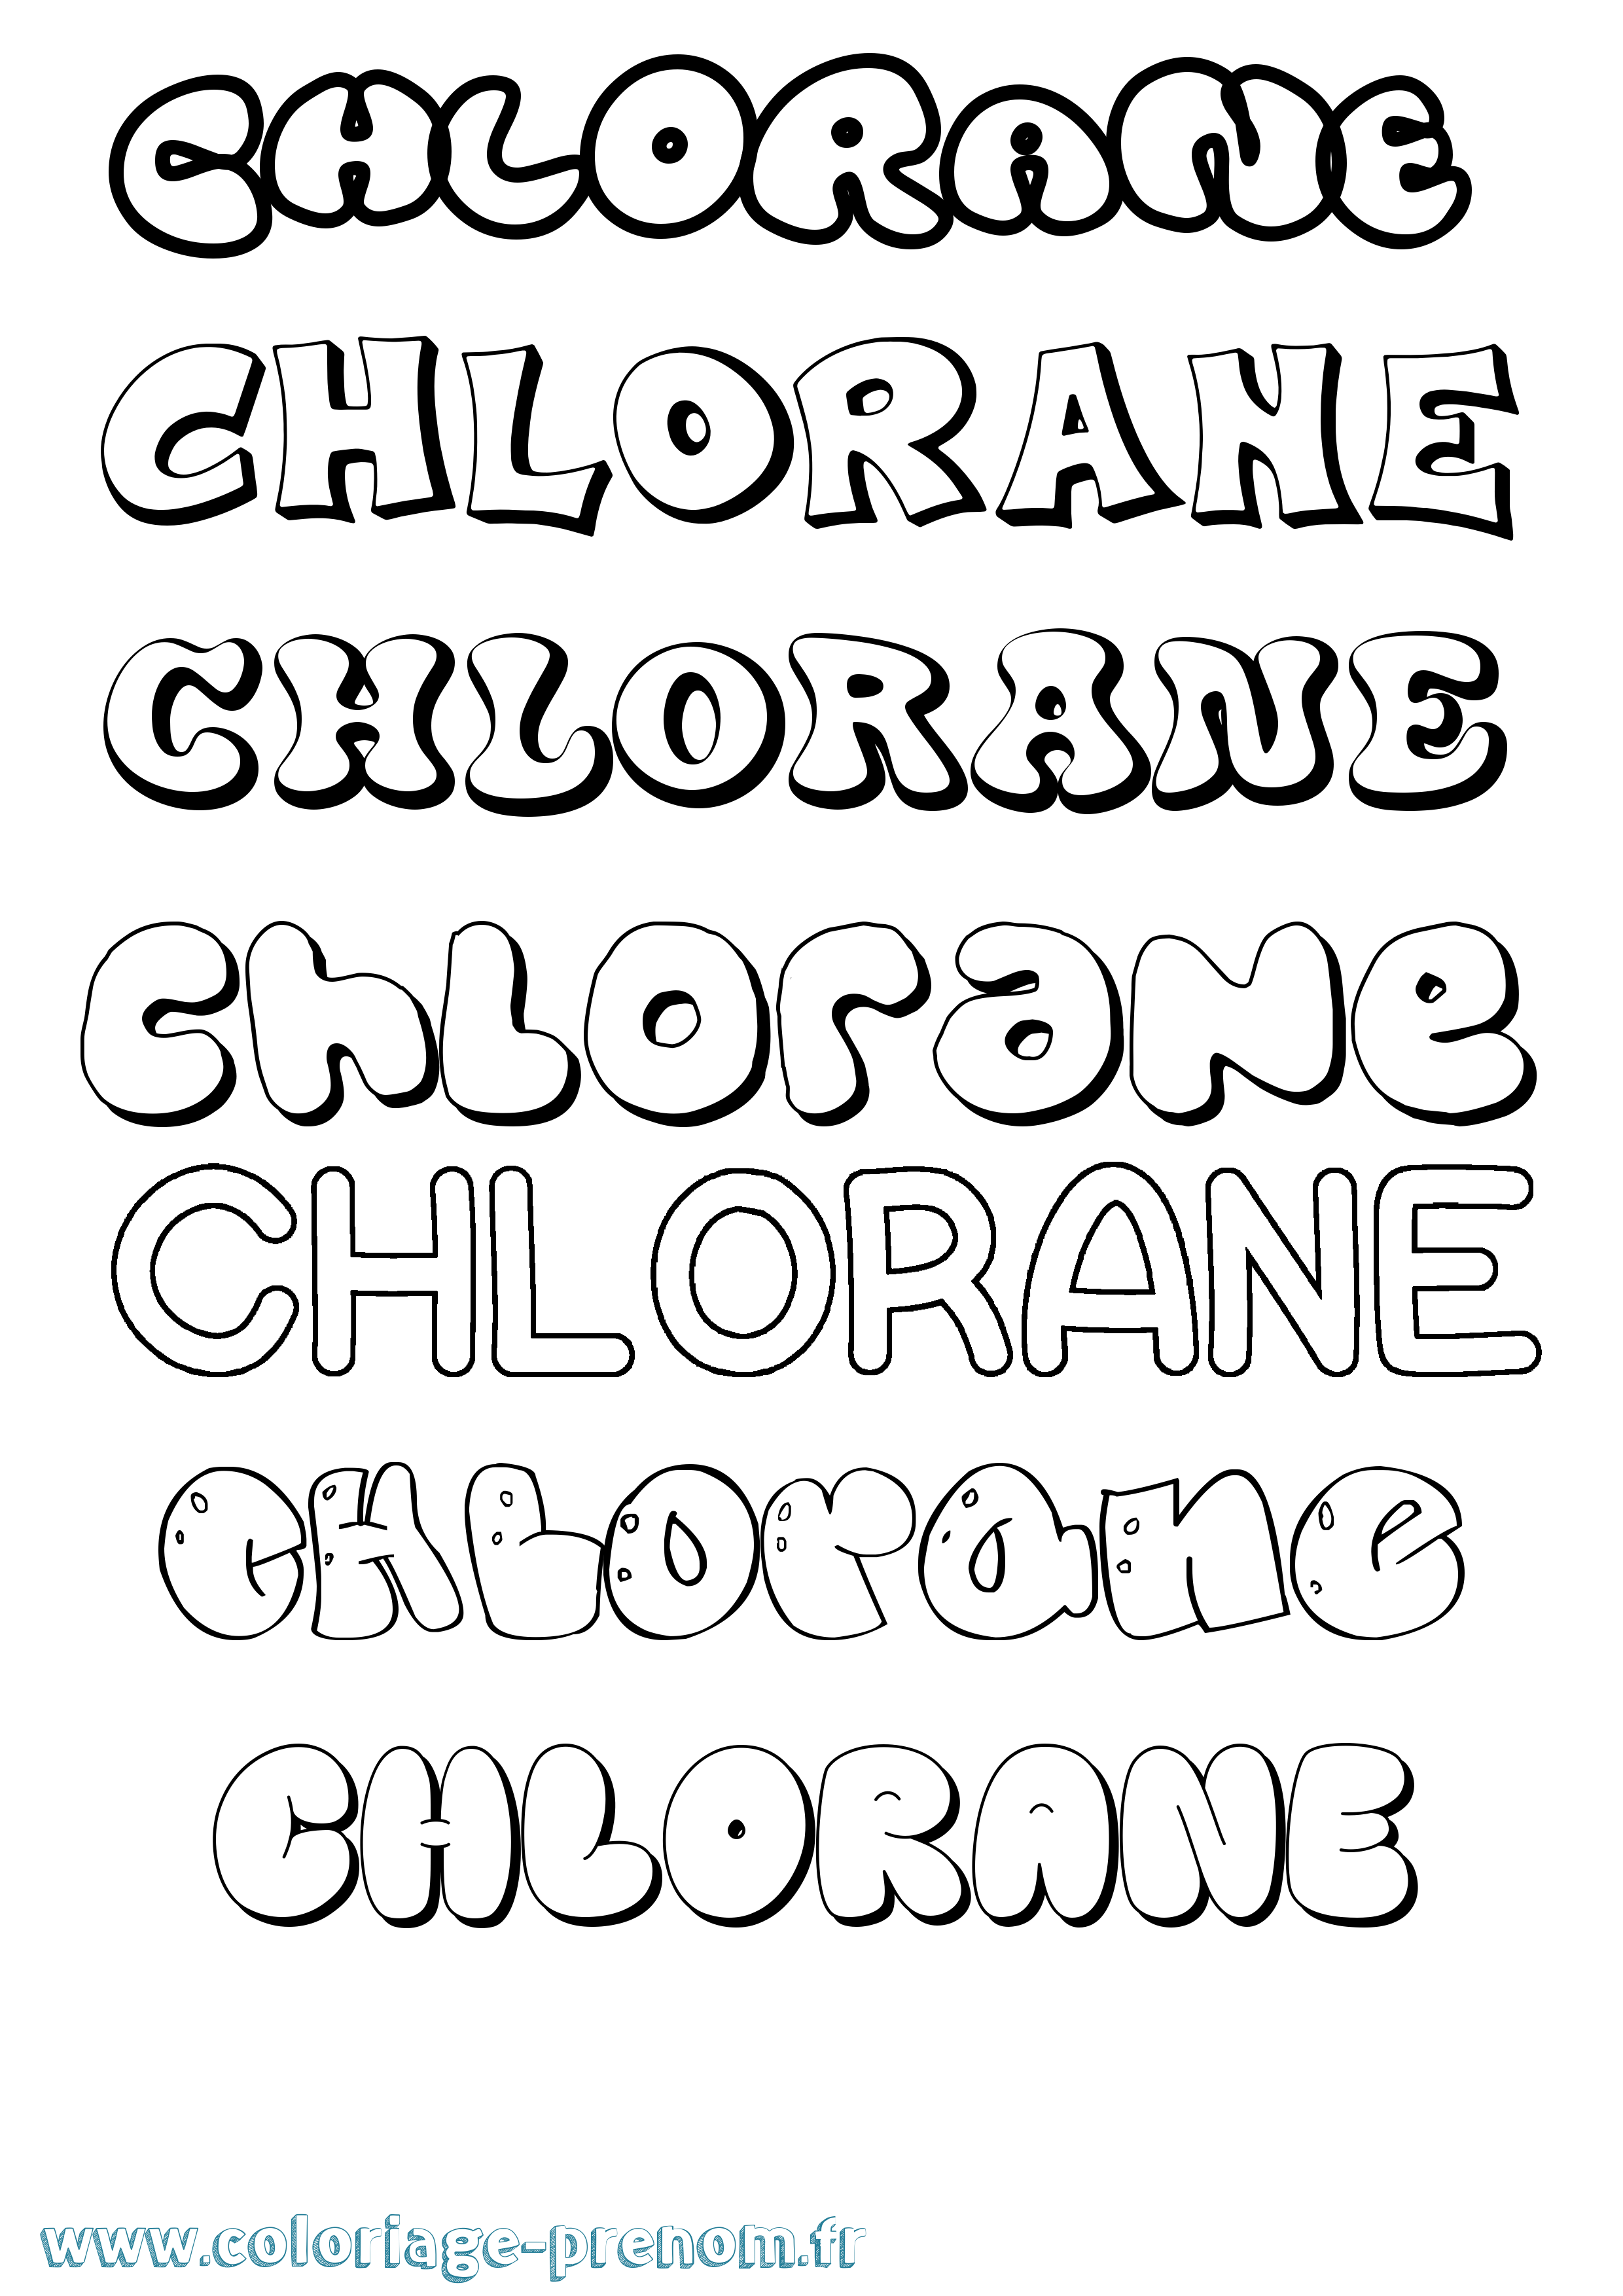 Coloriage prénom Chlorane Bubble